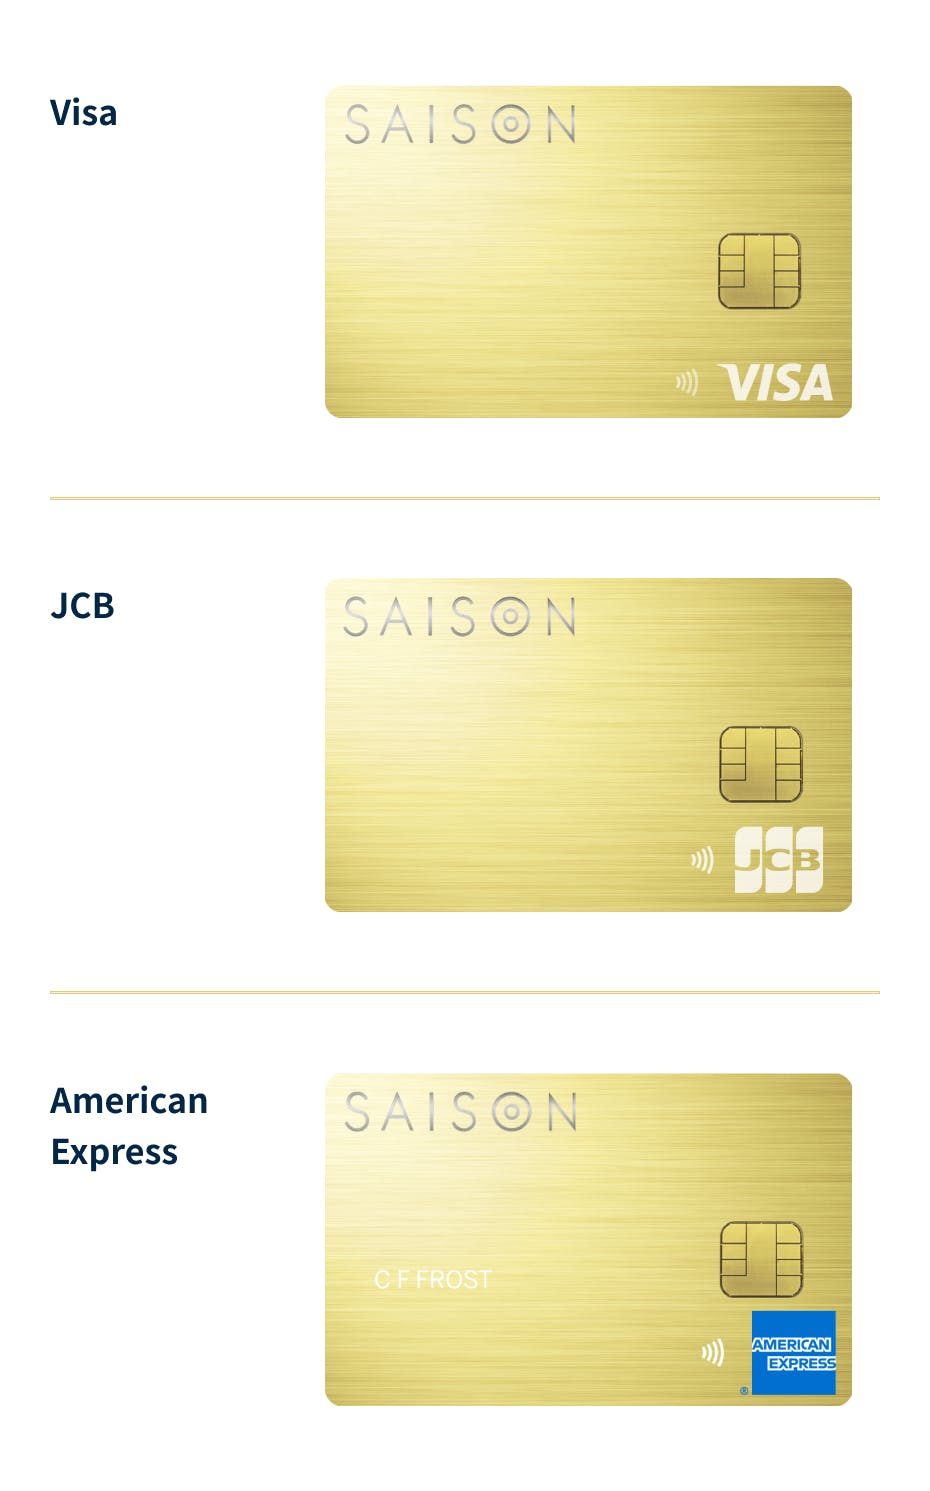 国際ブランド別のカード券面画像。それぞれ右下にVisa、JCB、American Expressのロゴが表示されている。